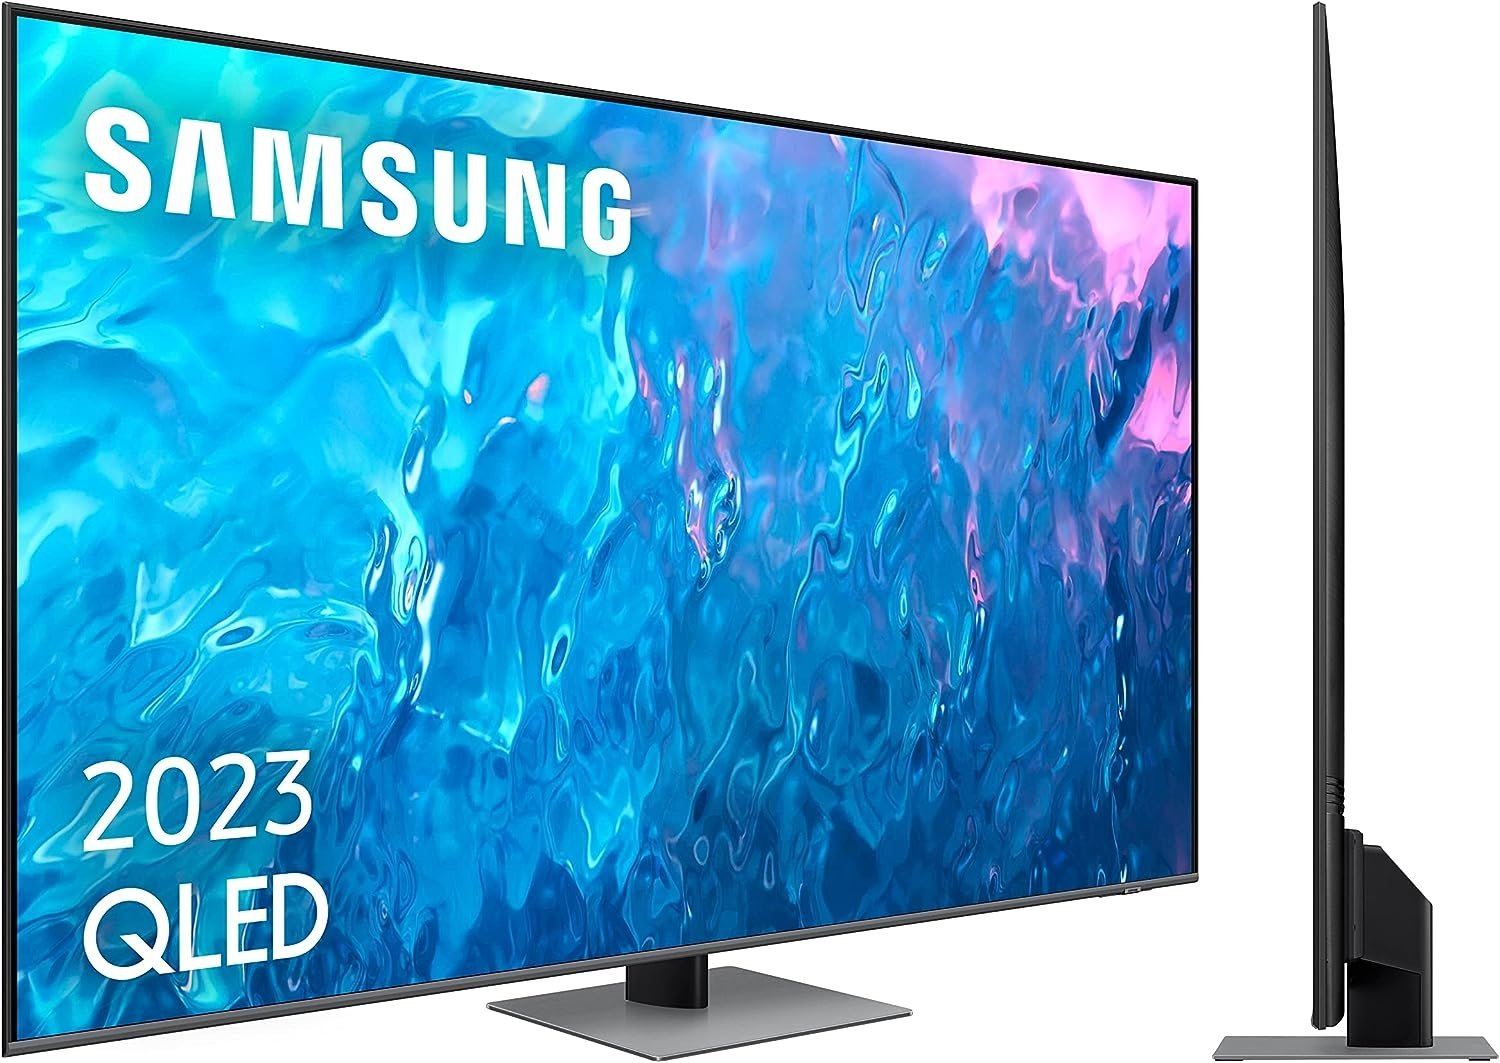 Aprovecha ahora y lleva a casa una smart TV Samsung de 75 pulgadas